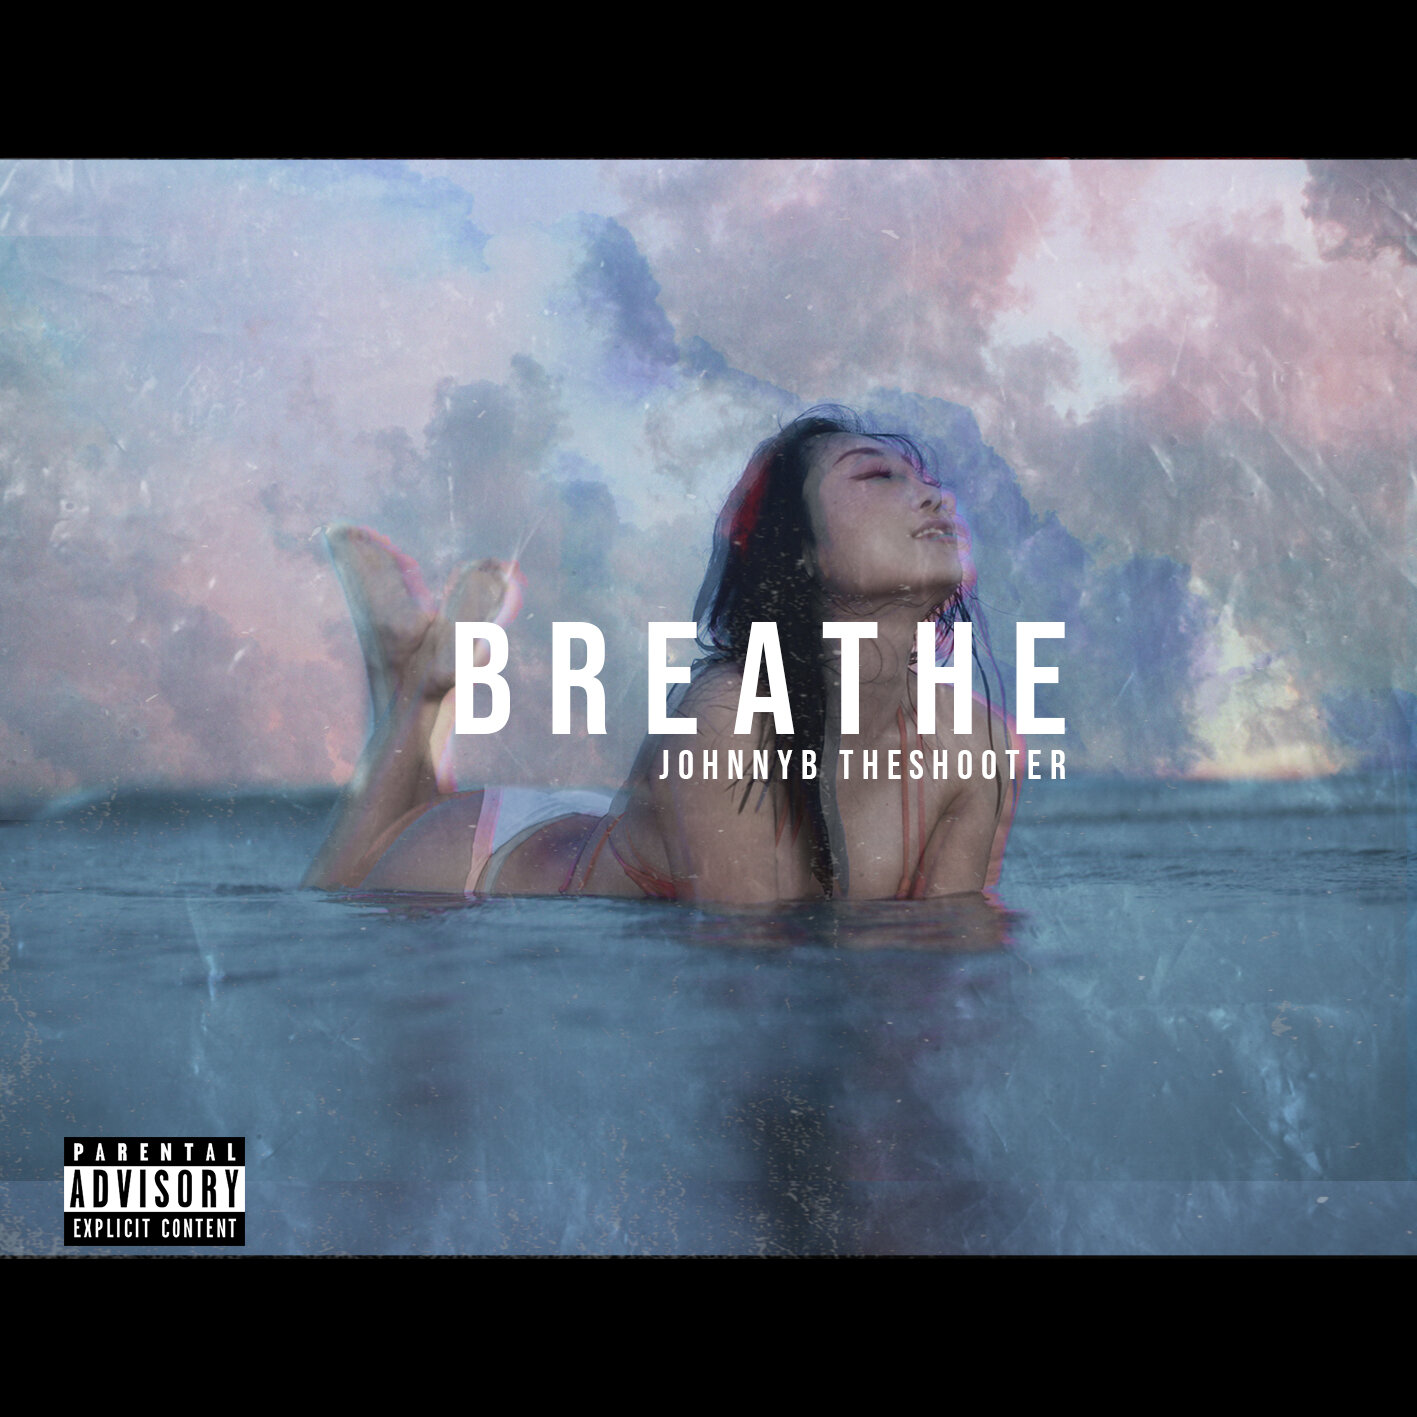 Breathe - JohnnyB theShooter COVER.jpg